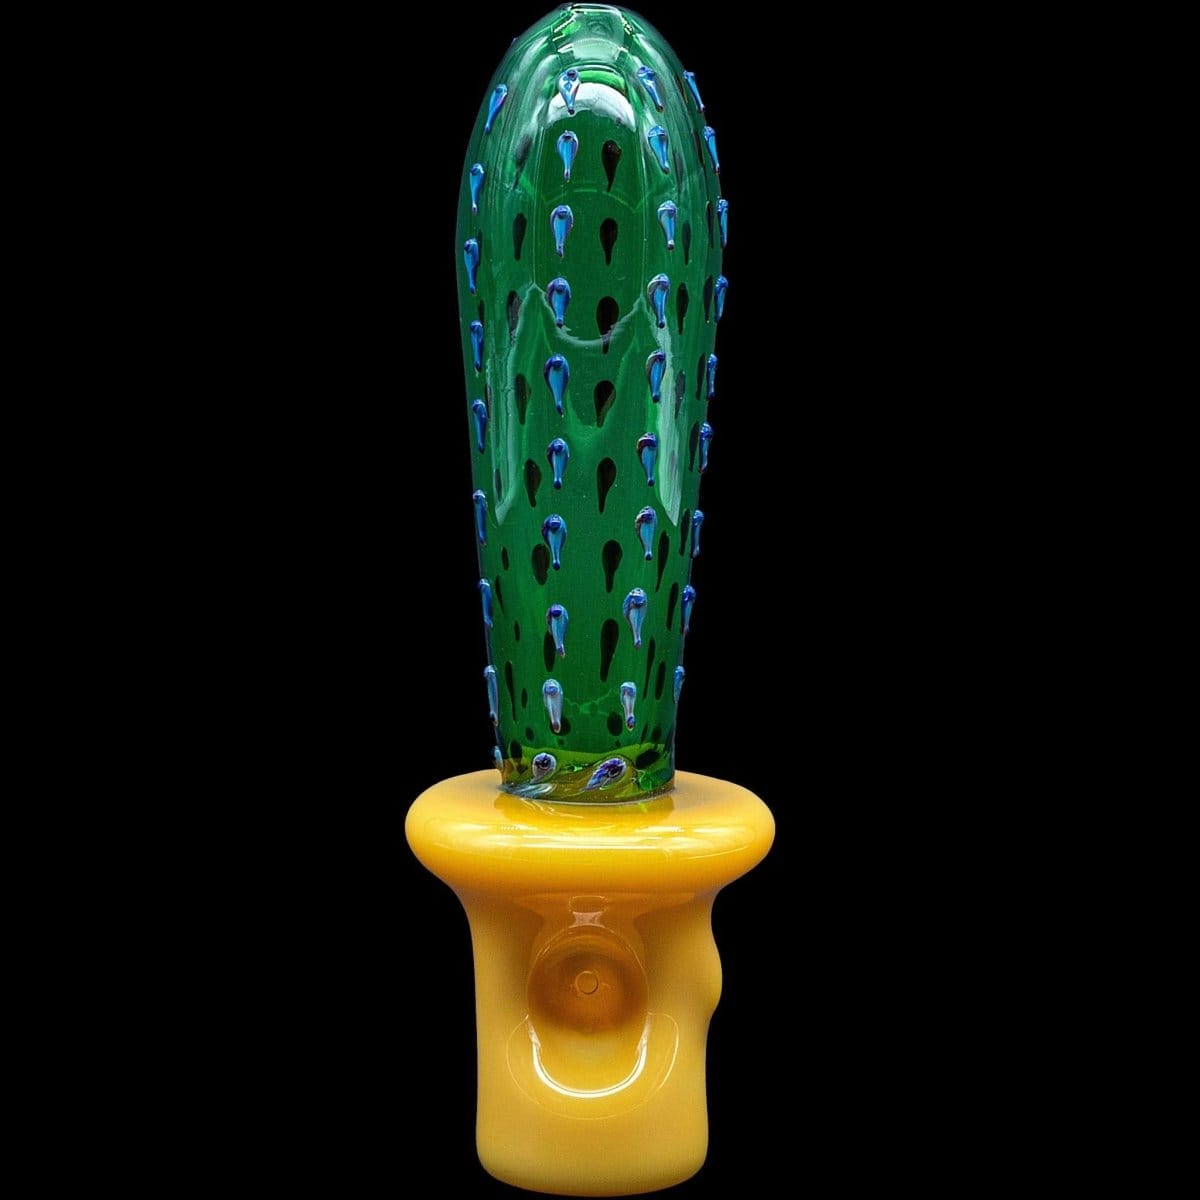 LA Pipes Hand Pipe "San Pedro" Cactus Glass Pipe